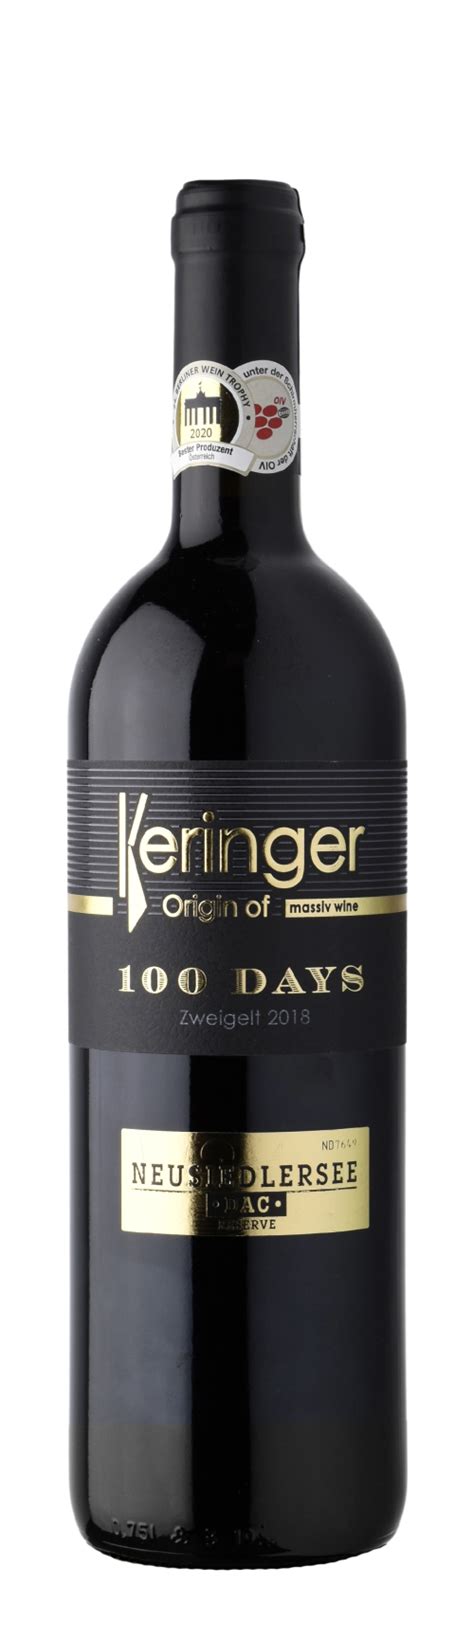 Zweigelt 100 Days Wein Guide